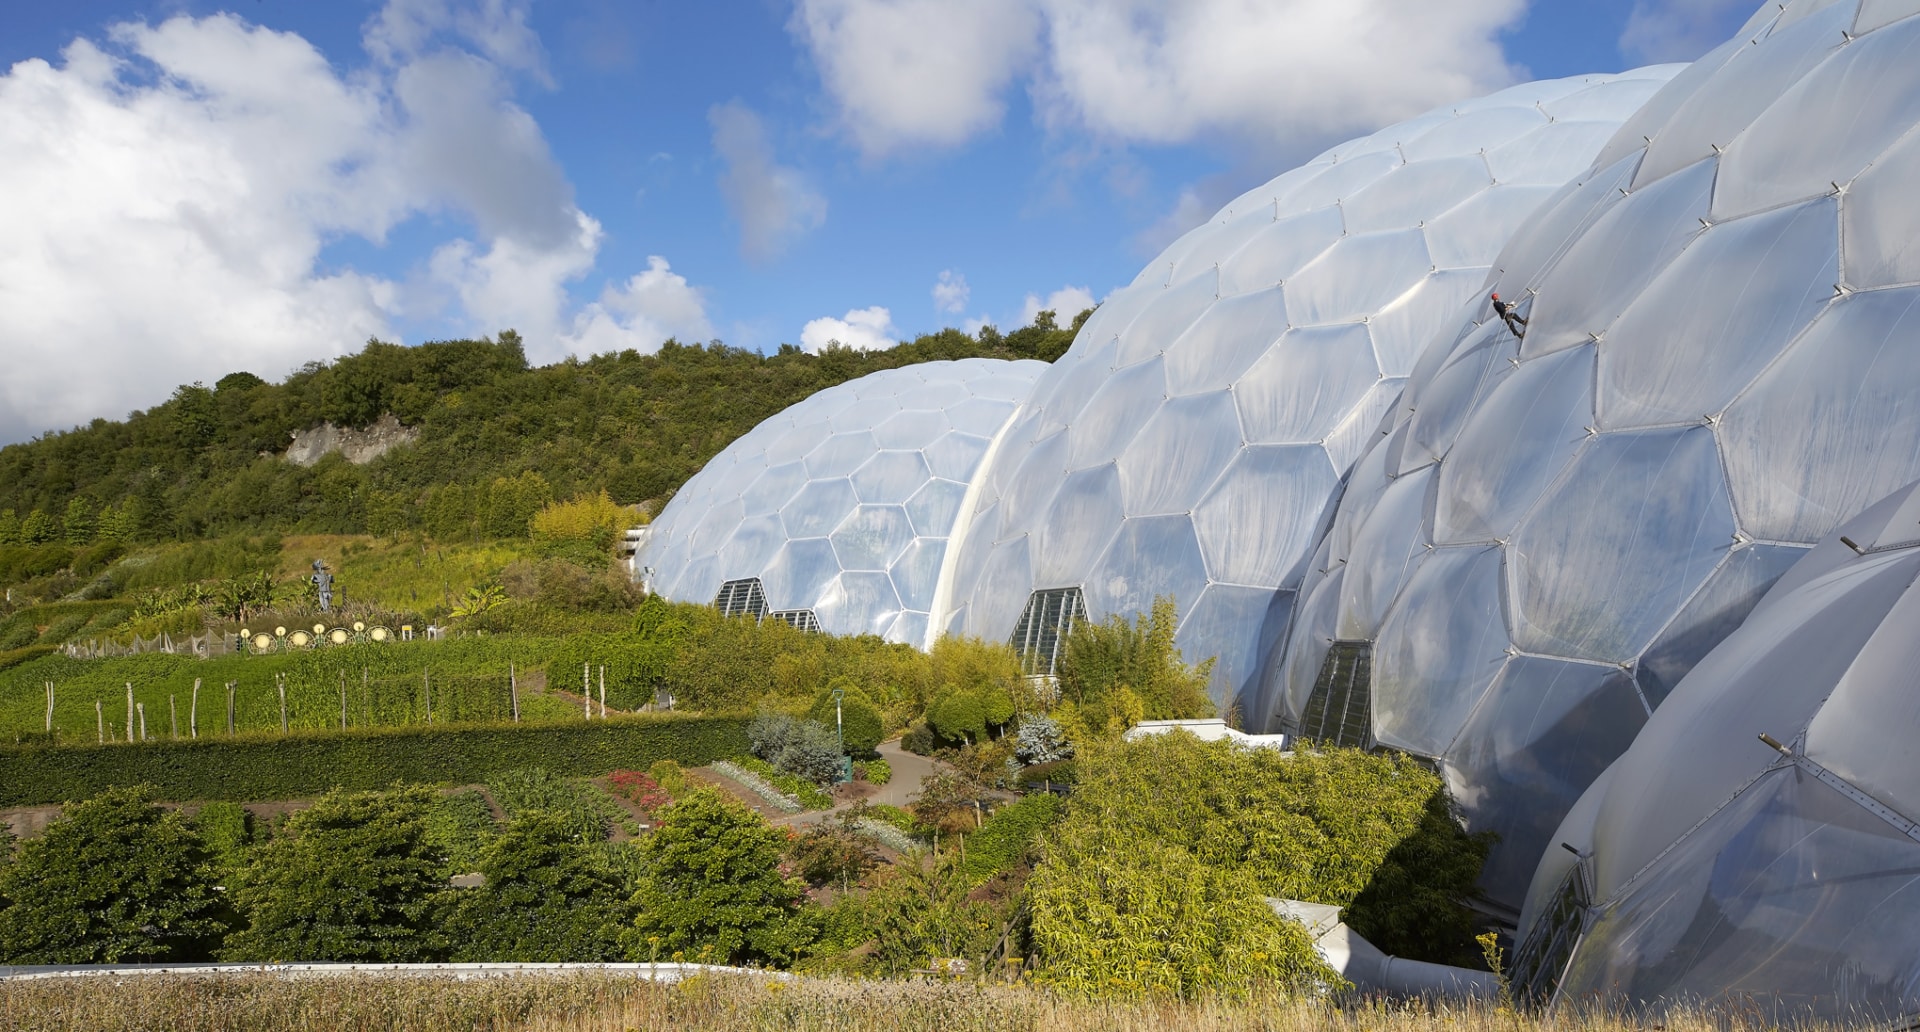 625 Texlon® ETFE Folienkissen überspannen die außergewöhnlichen Biome, die das konstruktive und gestalterische Herz des Eden-Projekts in Cornwall bilden